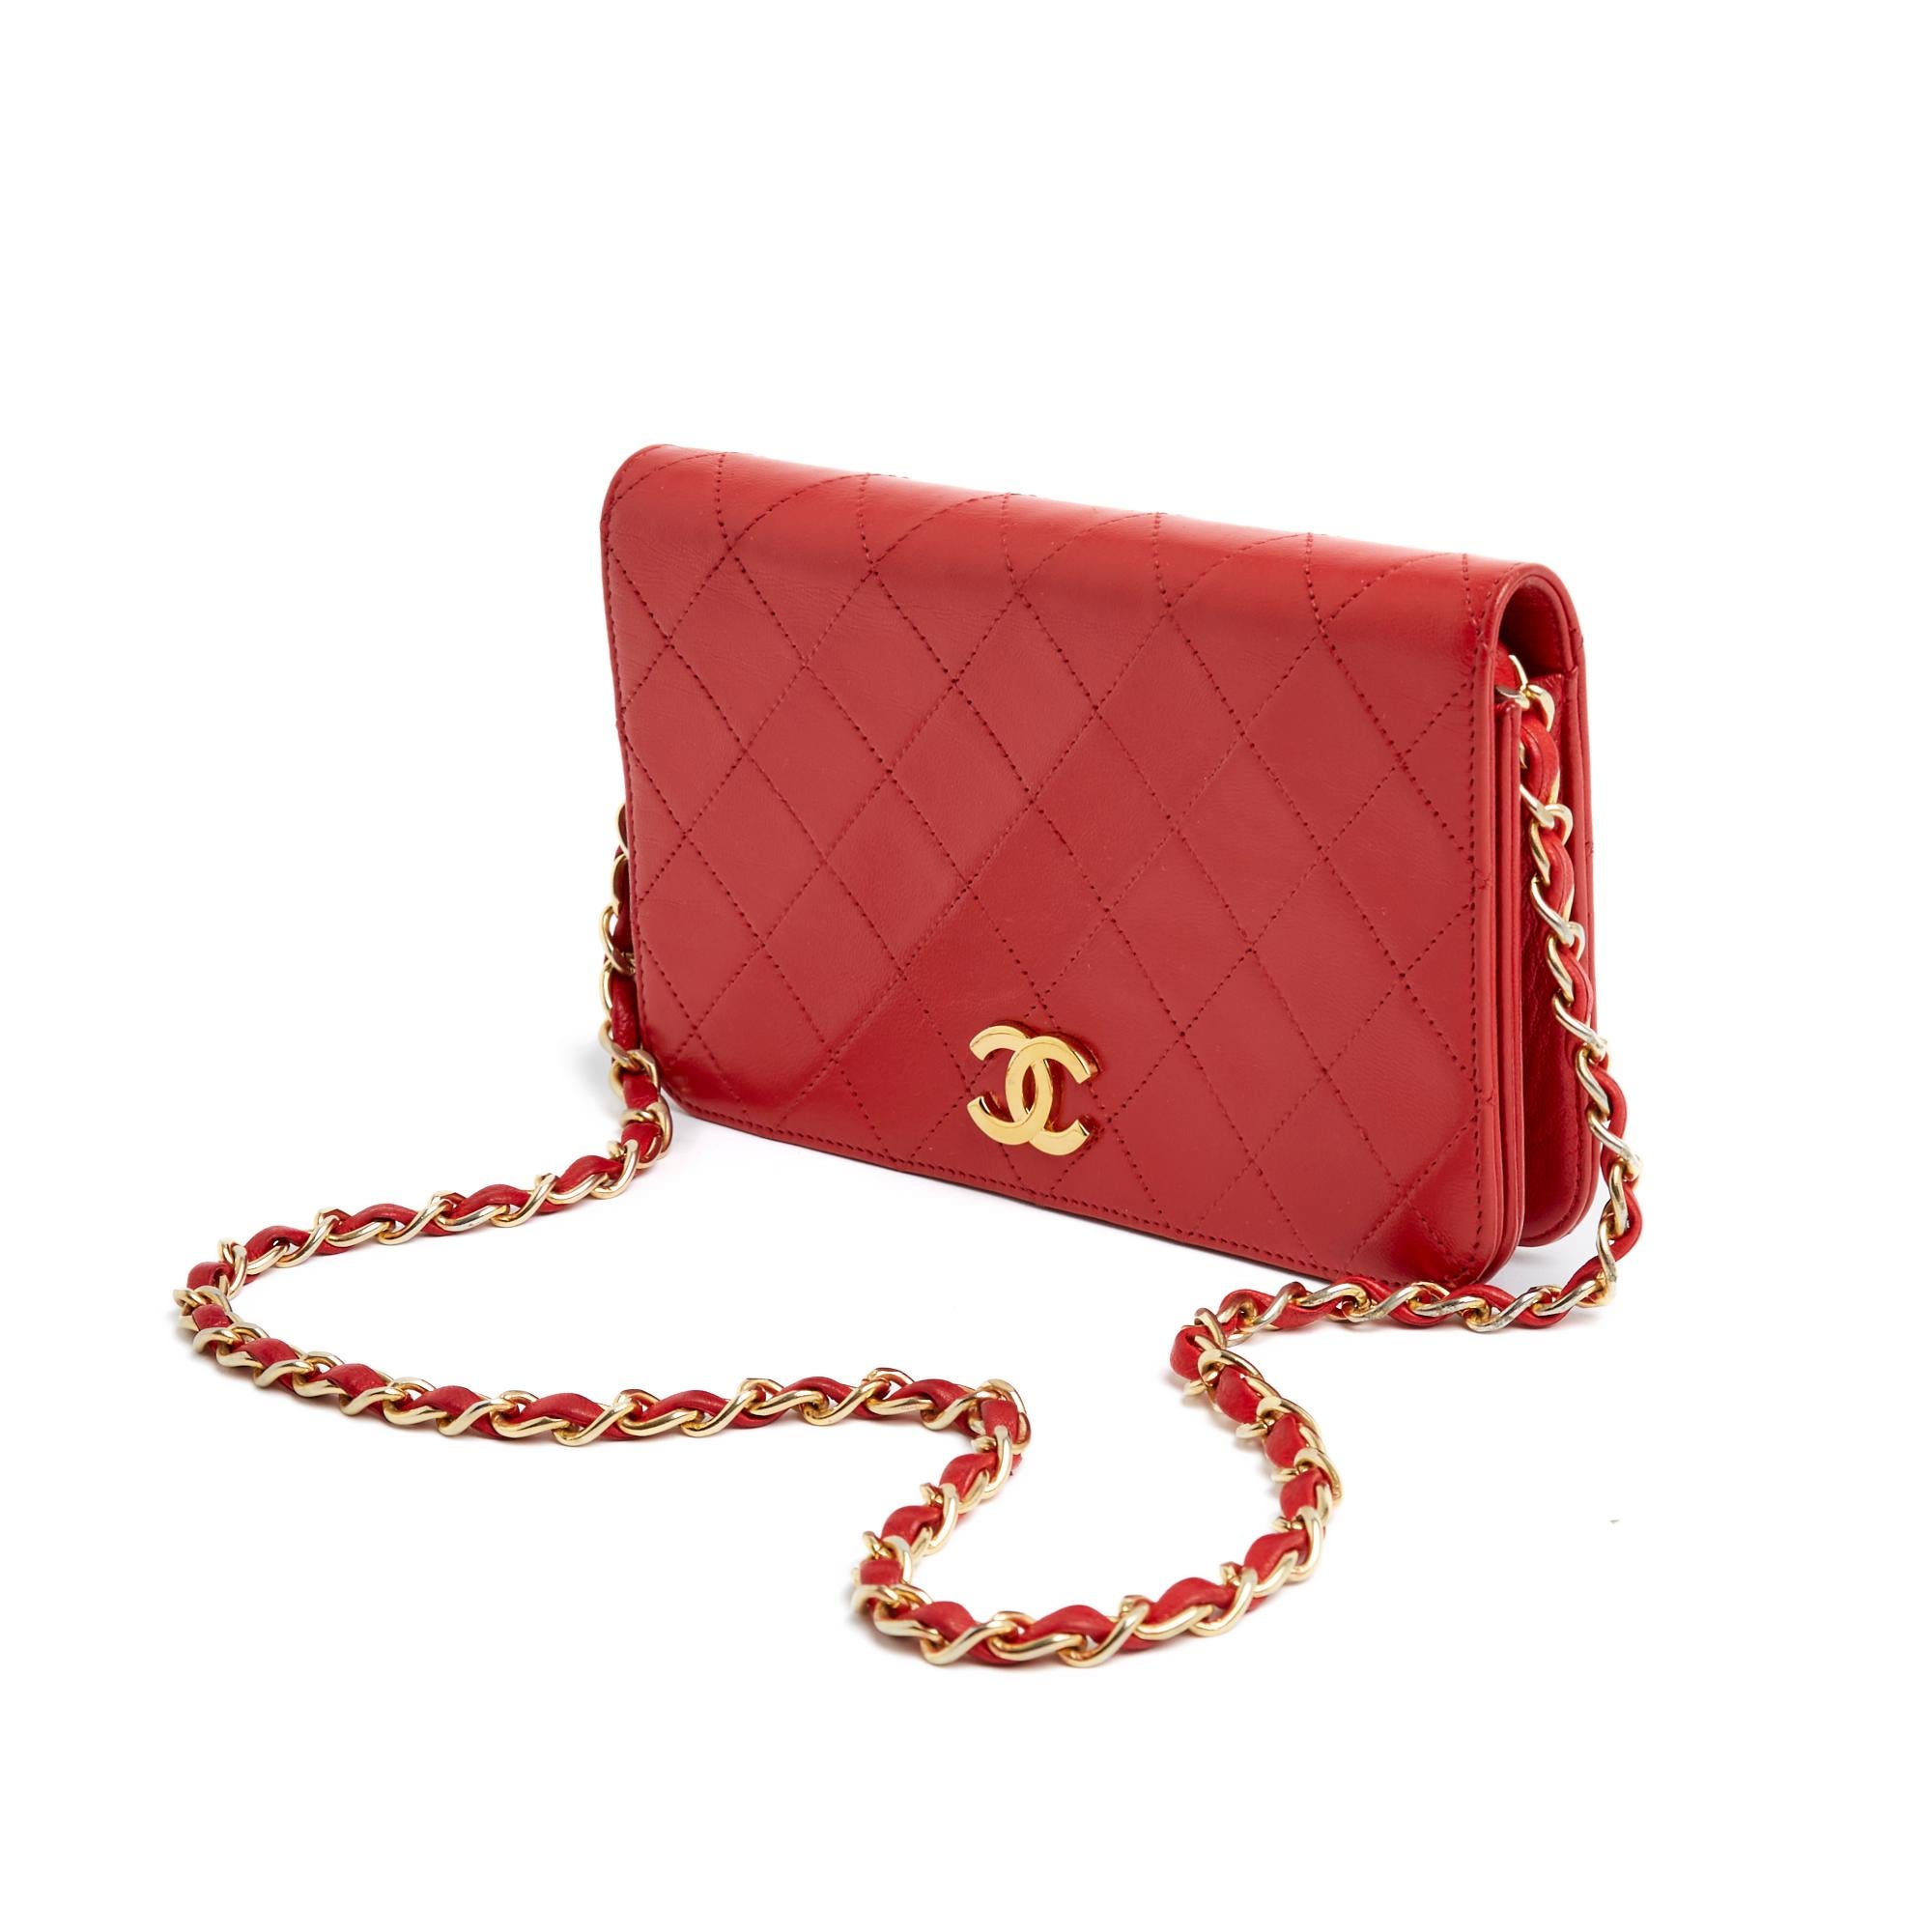 Vintage Chanel Wallet on Chain Modelltasche aus leuchtend rotem, gestepptem Leder, Klappe mit Druckknopf unter dem CC-Logo geschlossen, Innenausstattung aus schwarzem Leder mit 1 aufgesetzten Tasche, Schulterriemen aus goldener Metallkette, die mit